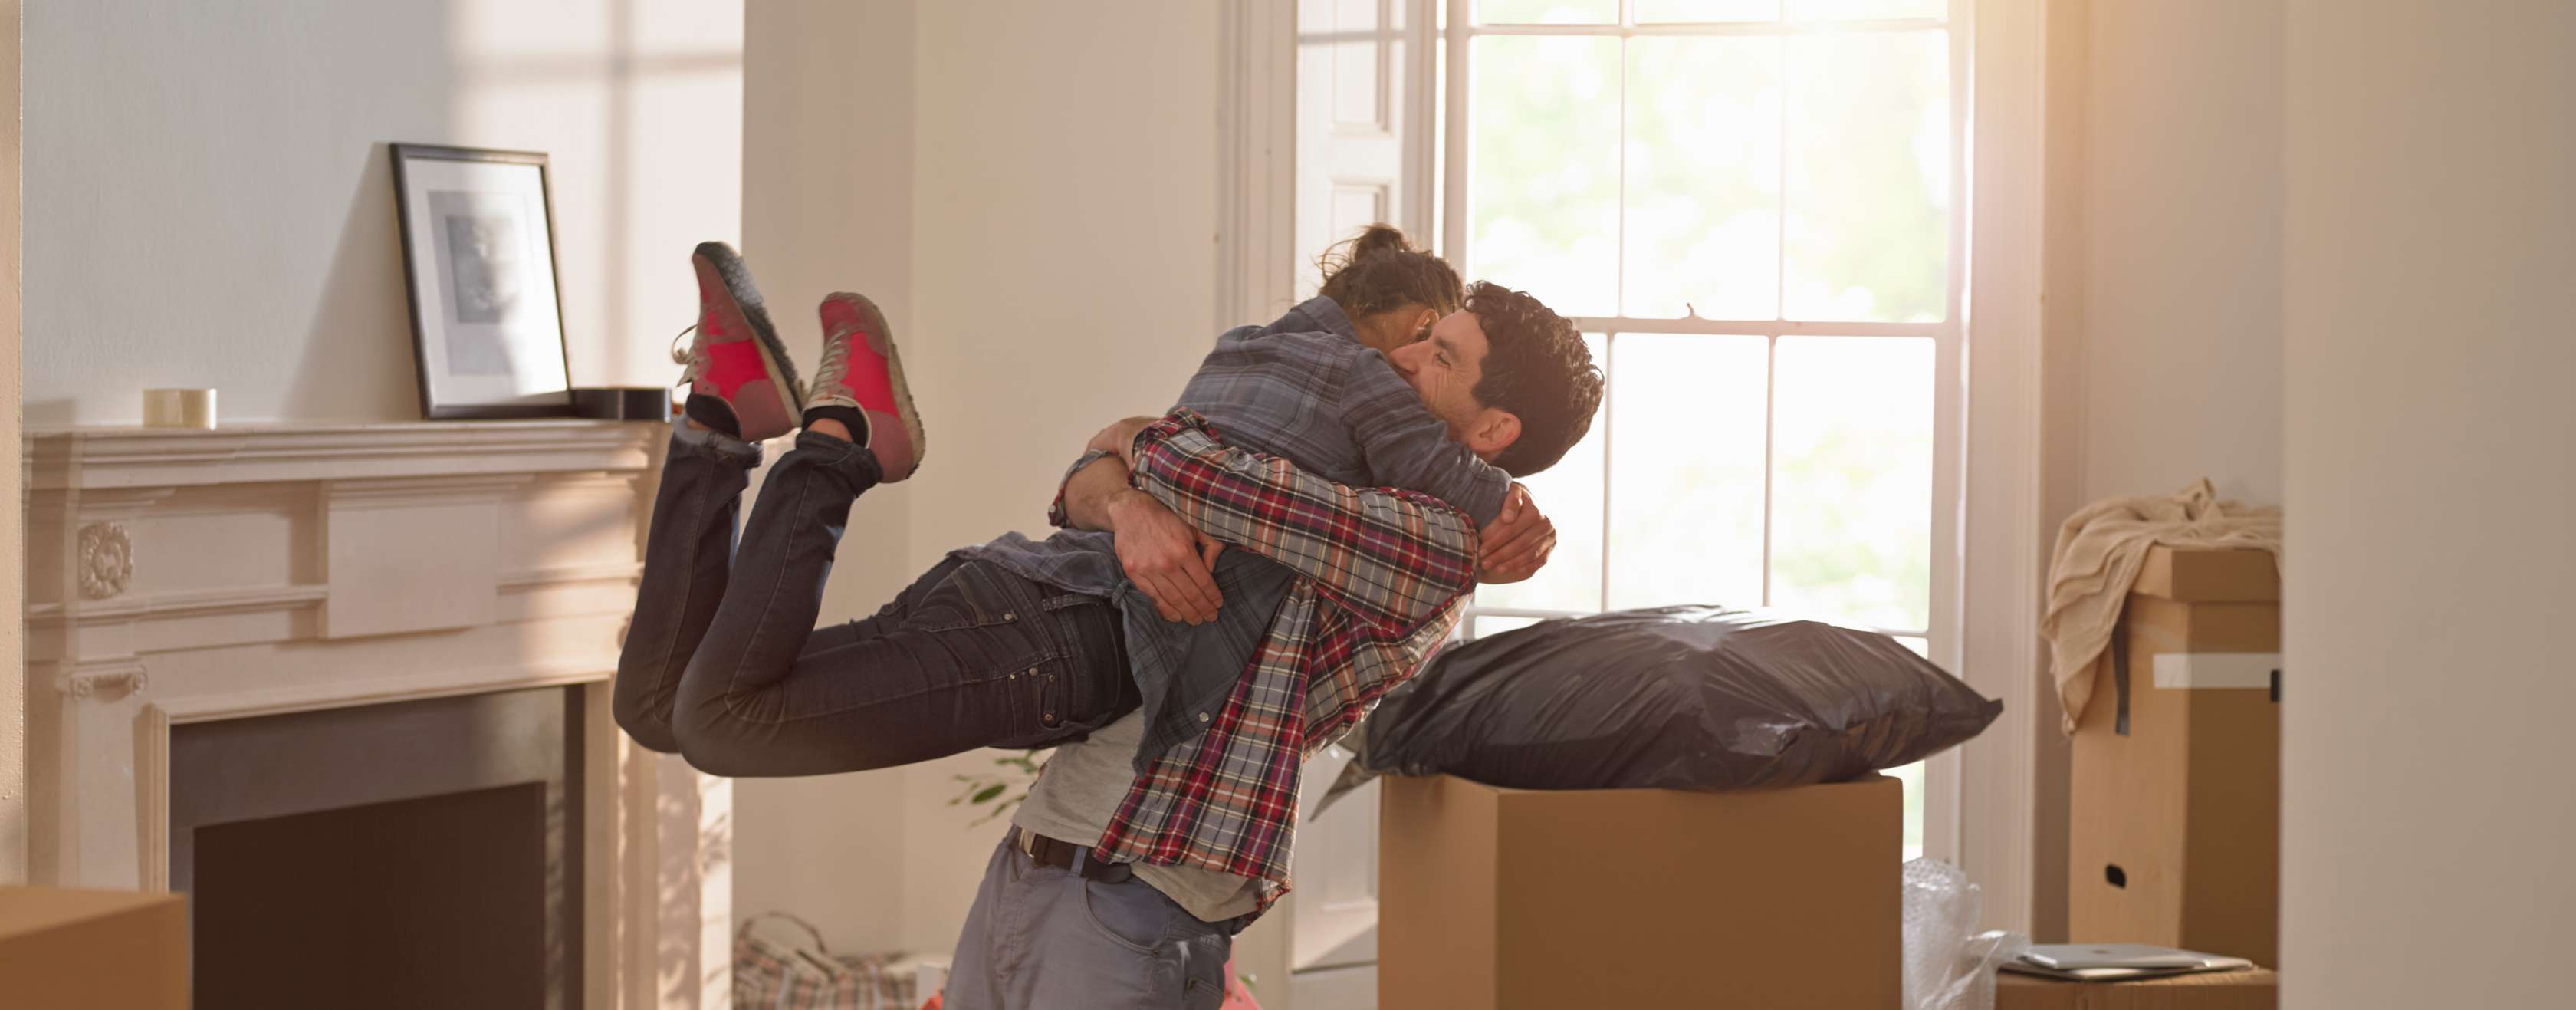 Junge Frau springt einem Mann in die Arme, um sie herum sind Kartons in einer Wohnung